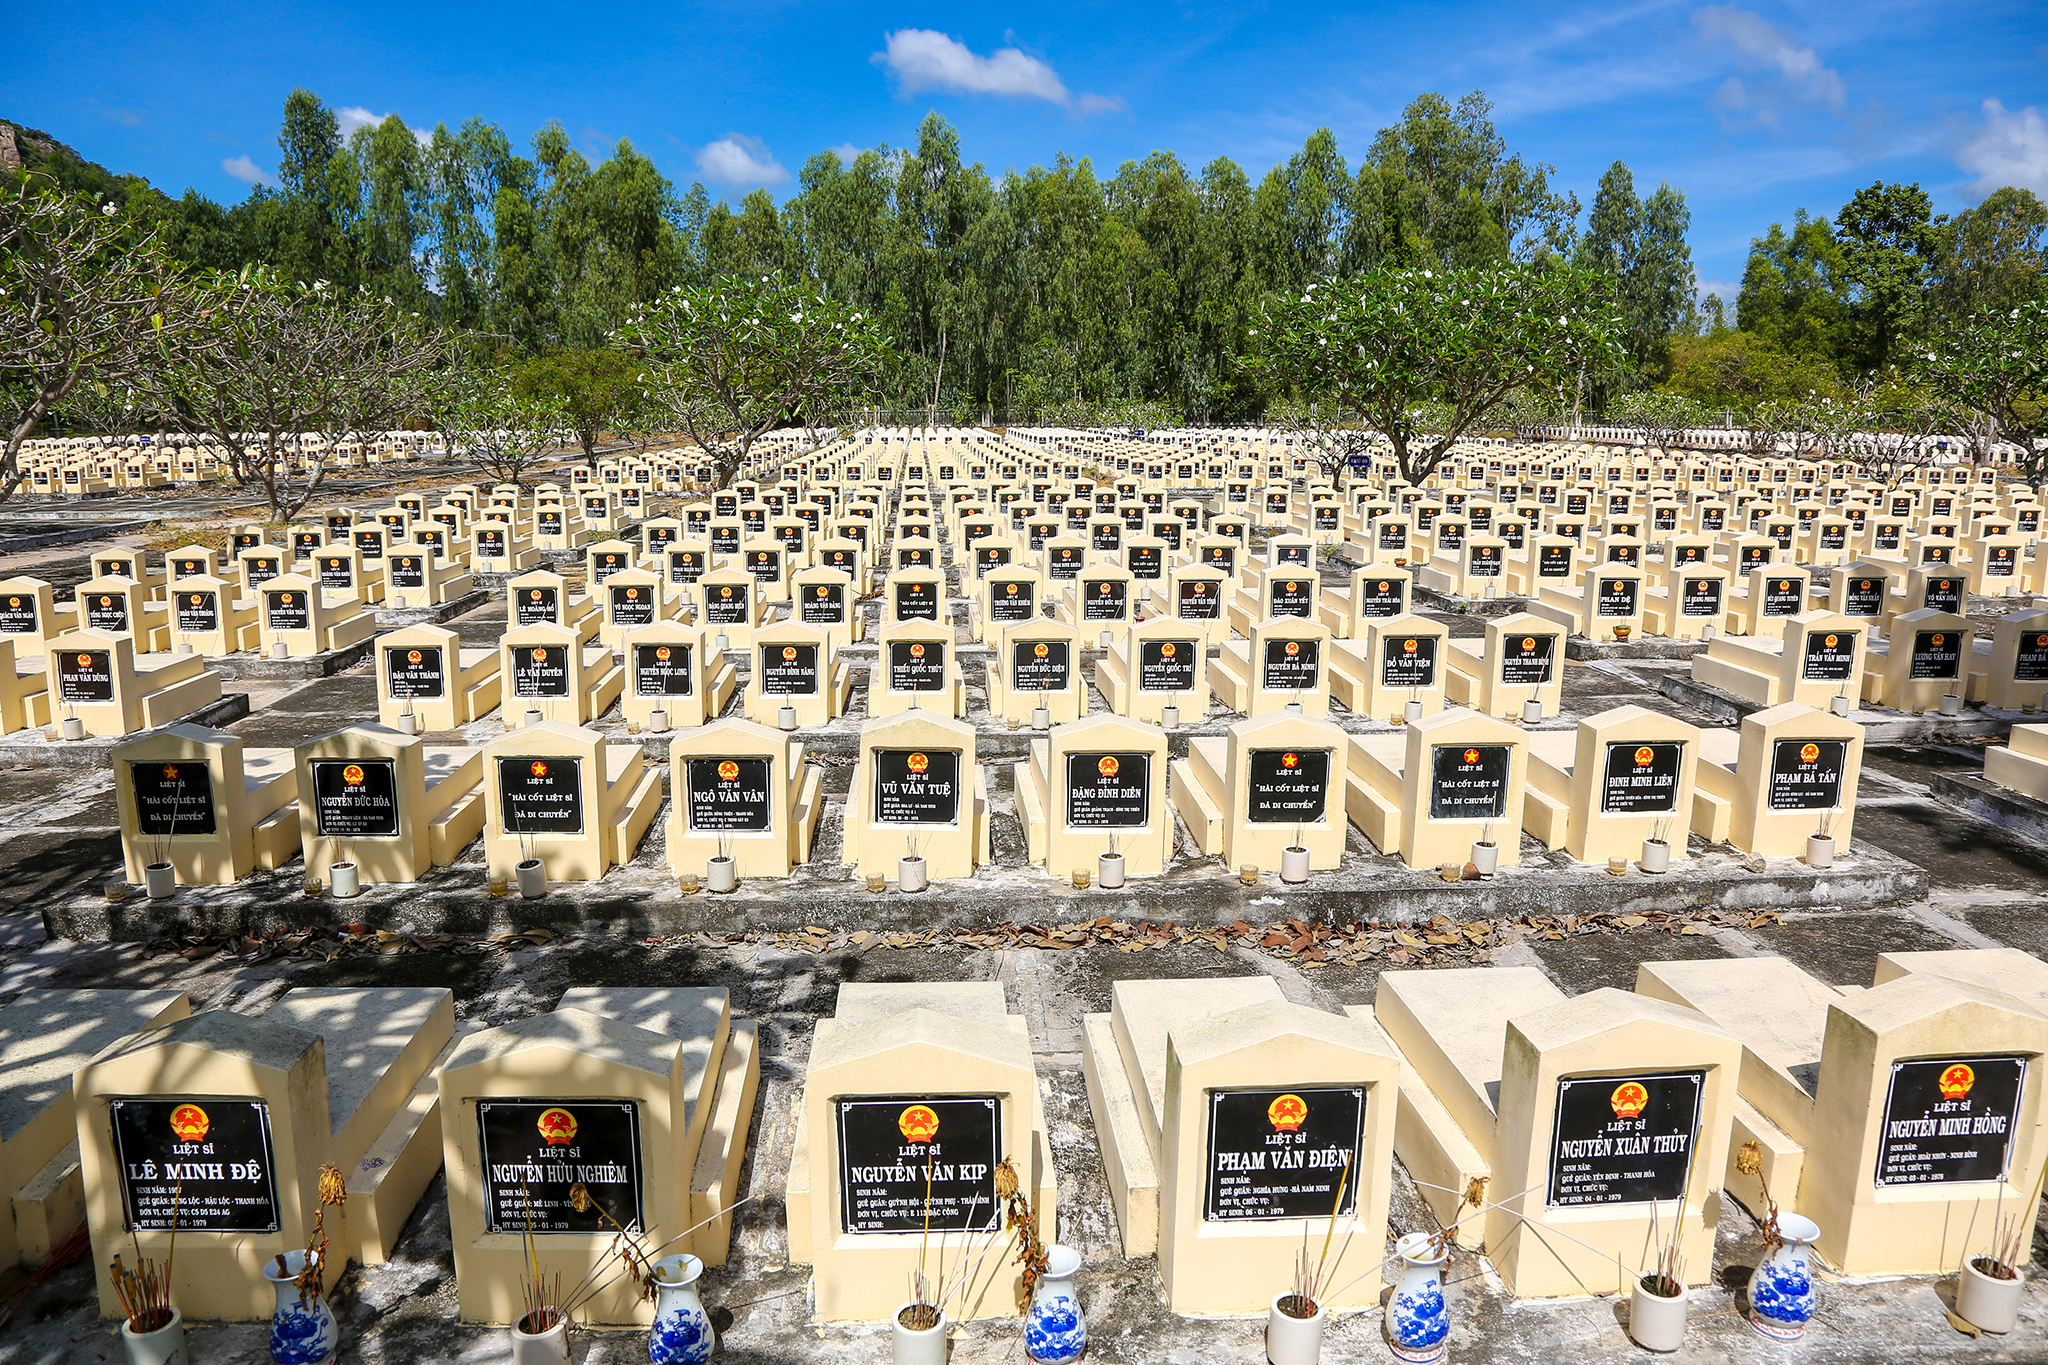 Gần 20 năm qua, ông Huỳnh Trí và Đội K93 đã tìm được 2.533 bộ hài cốt liệt sỹ, trong đó 275 hài cốt liệt sỹ có tên. Hầu hết các hài cốt này được an táng tại nghĩa trang Dốc Bà Đắc thuộc huyện Tri Tôn, An Giang - một nghĩa trang Trường Sơn phía Tây Nam Tổ quốc. 